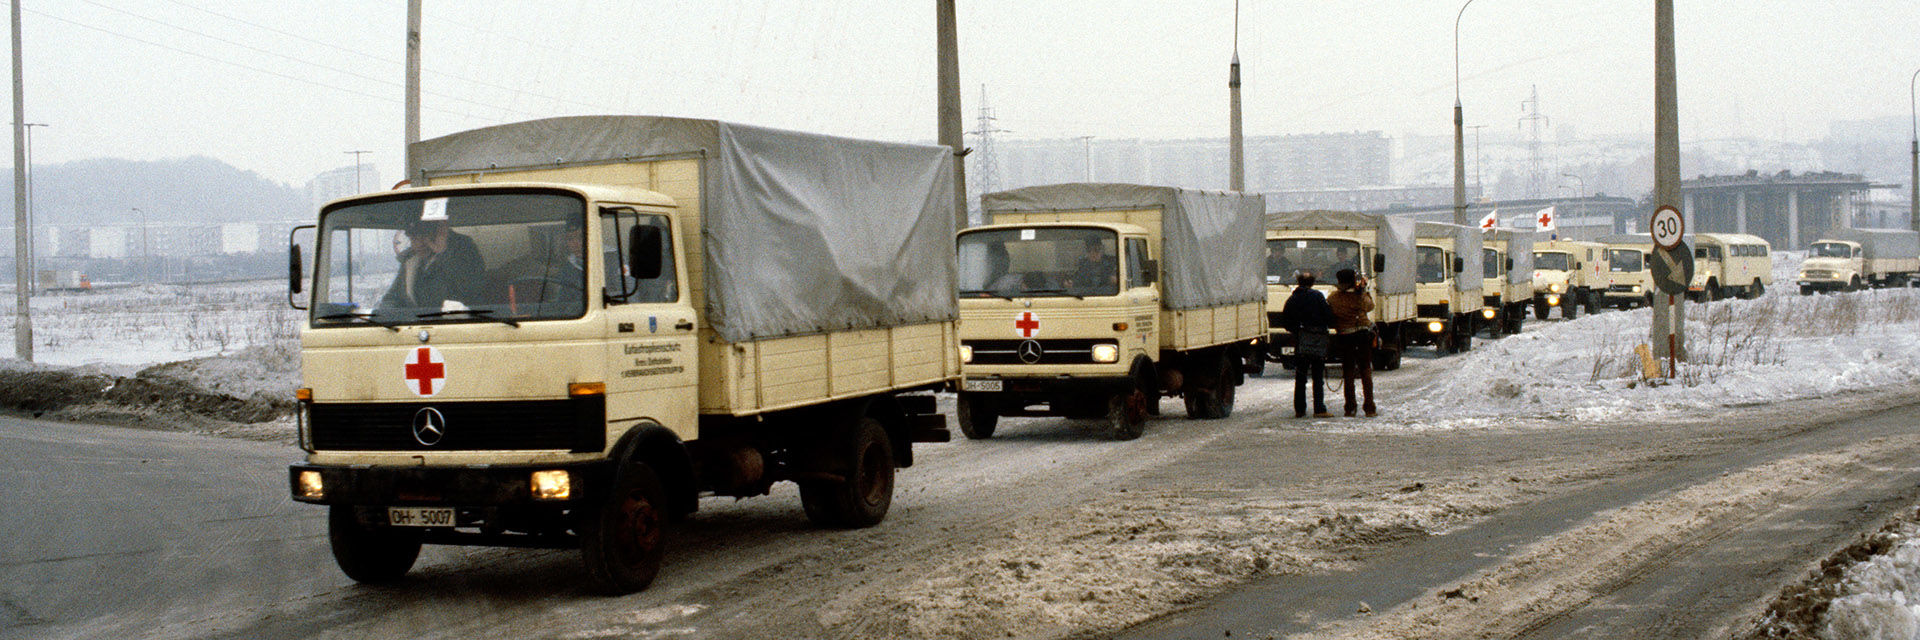 Hilfskonvoi mit Lastern im Schneematsch